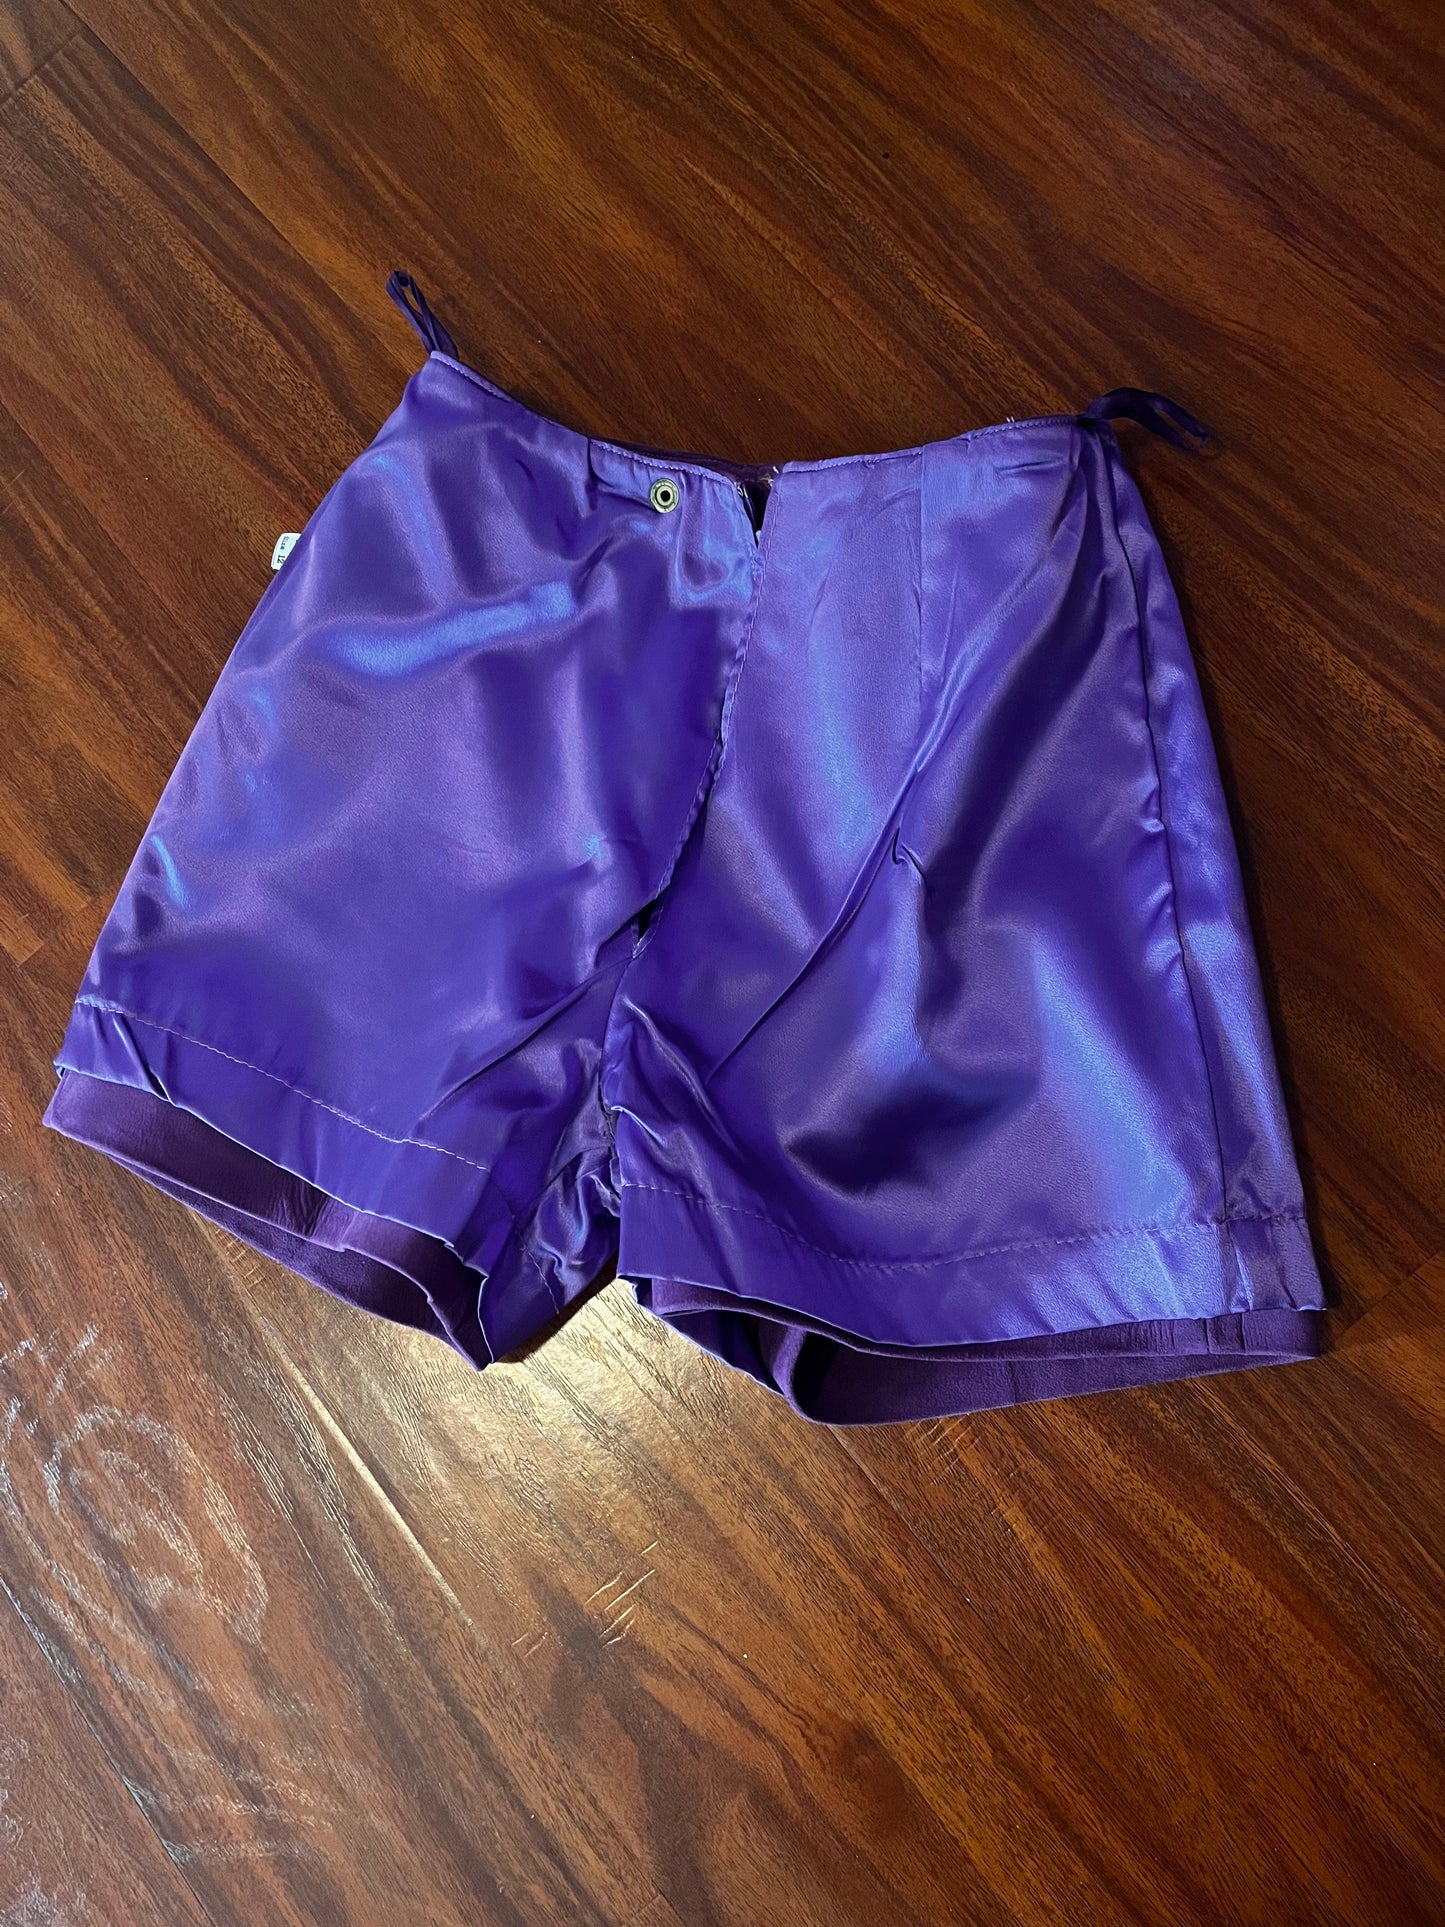 Vintage 1960's Purple Leather Shorts / Hot Pants